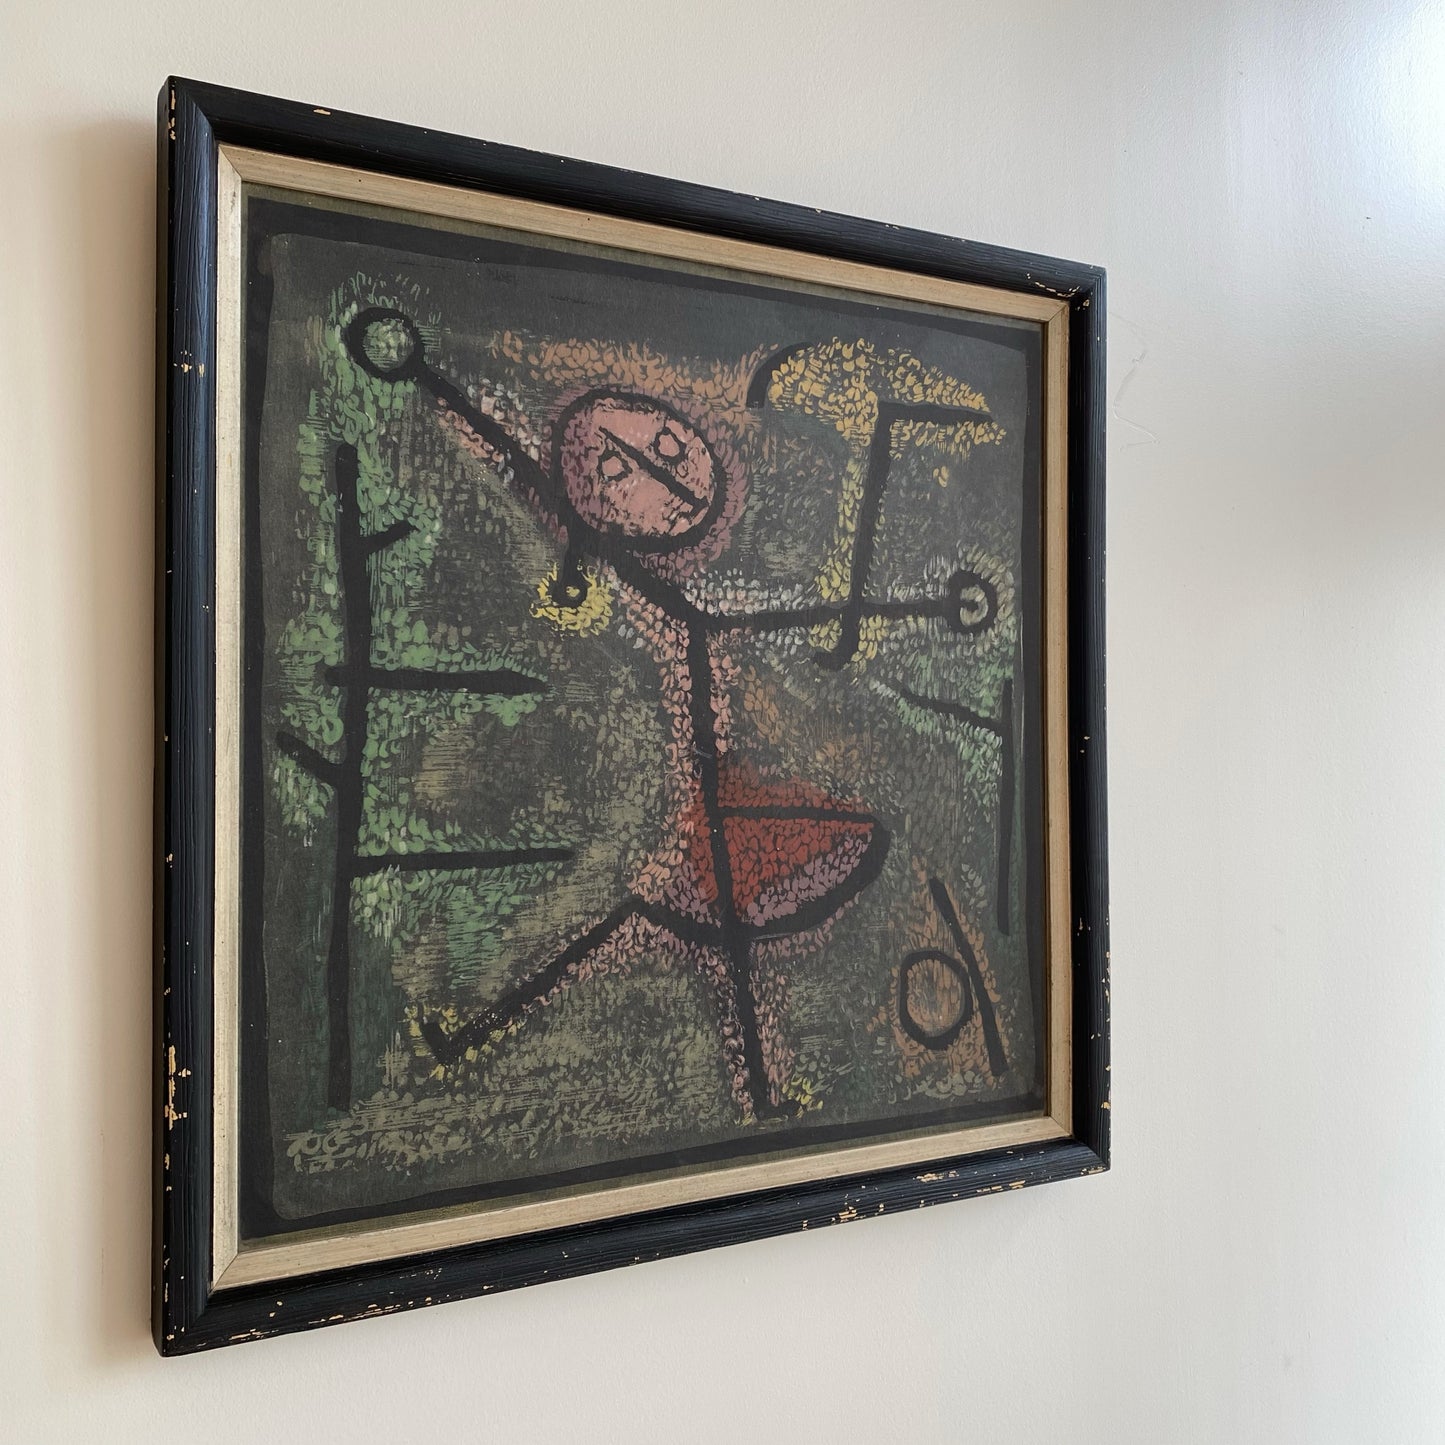 Vintage “Dancing Girl” Framed Art Print by Paul Klee